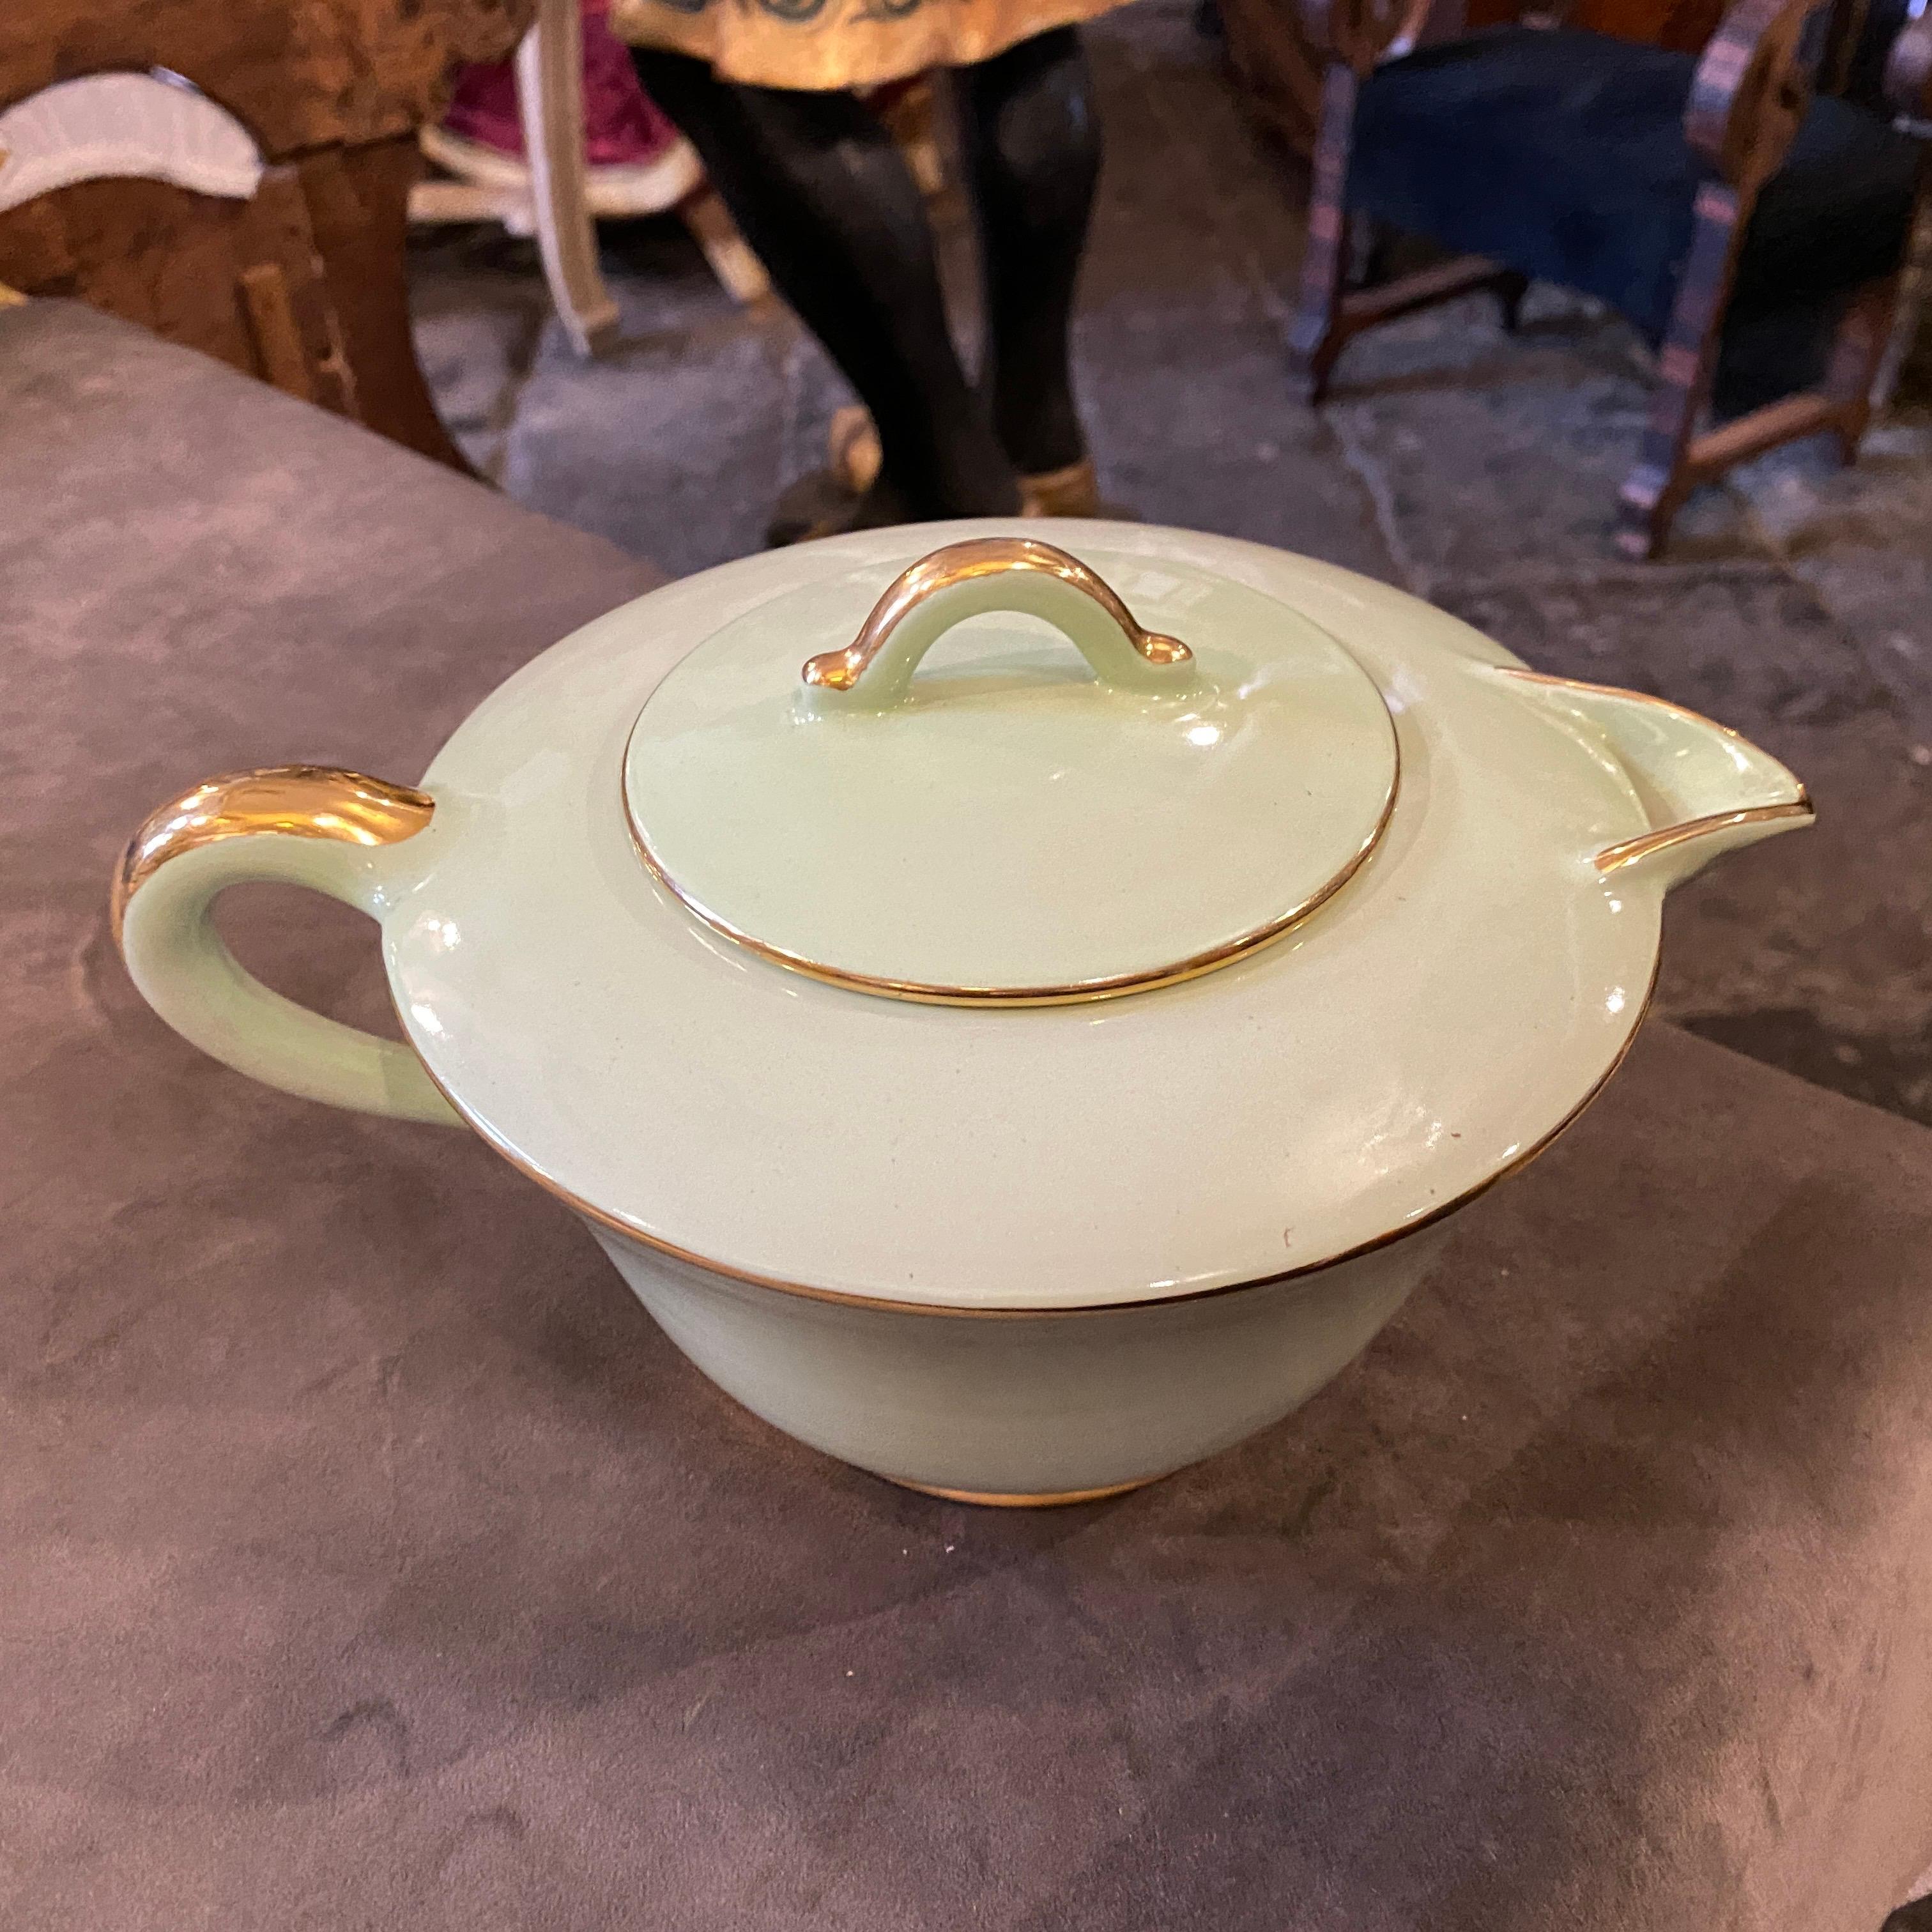 Eine elegante hellgrüne und goldene Keramik-Teekanne aus der Mitte des Jahrhunderts, entworfen und hergestellt von Pucci in den Sechzigern. Es ist auf der Unterseite signiert. Das Design der Teekanne zeichnet sich durch klare, geometrische Linien